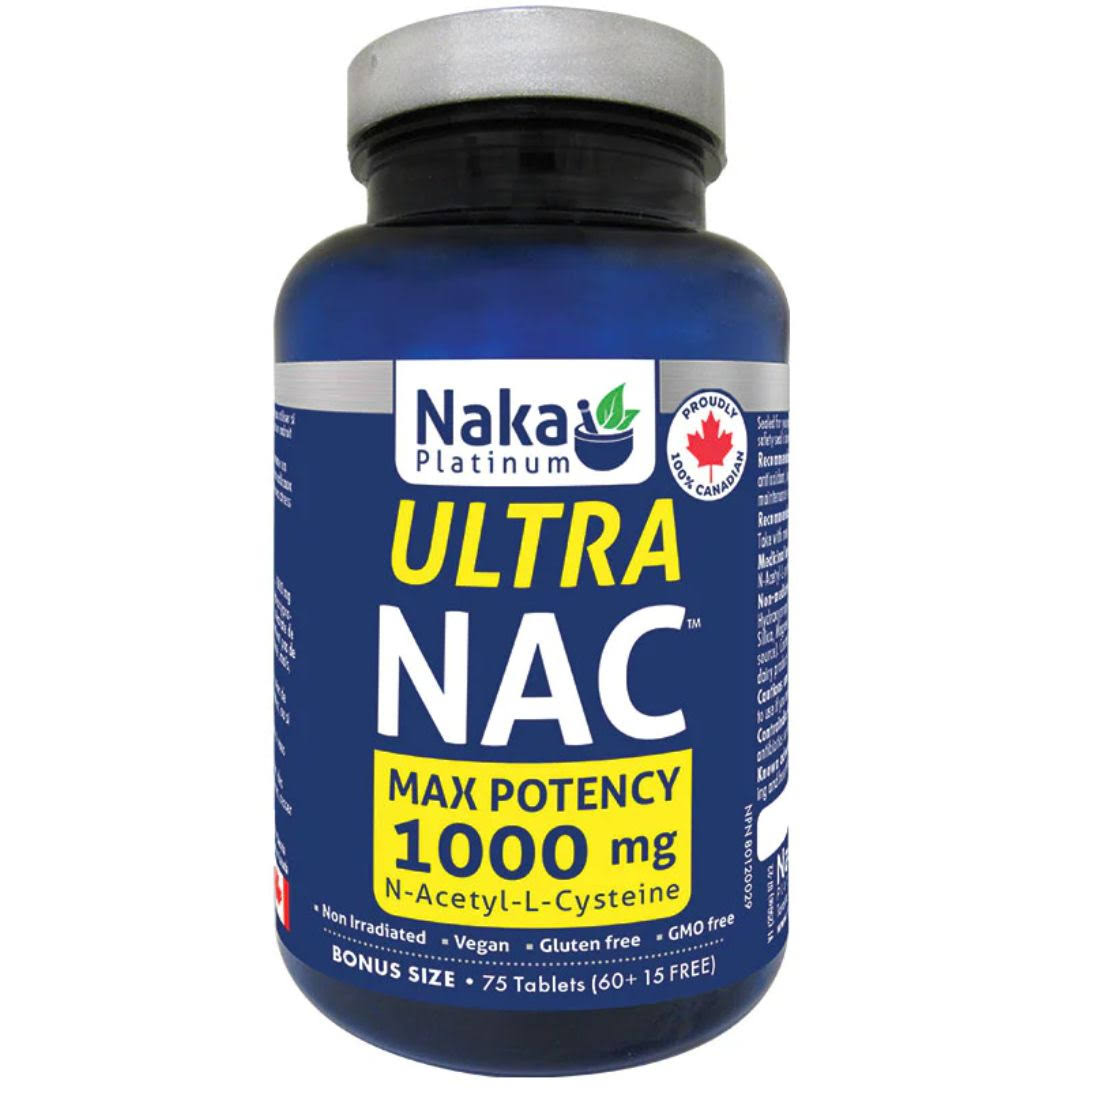 Naka Platinum Ultra NAC Max Potency 1000mg Tablets